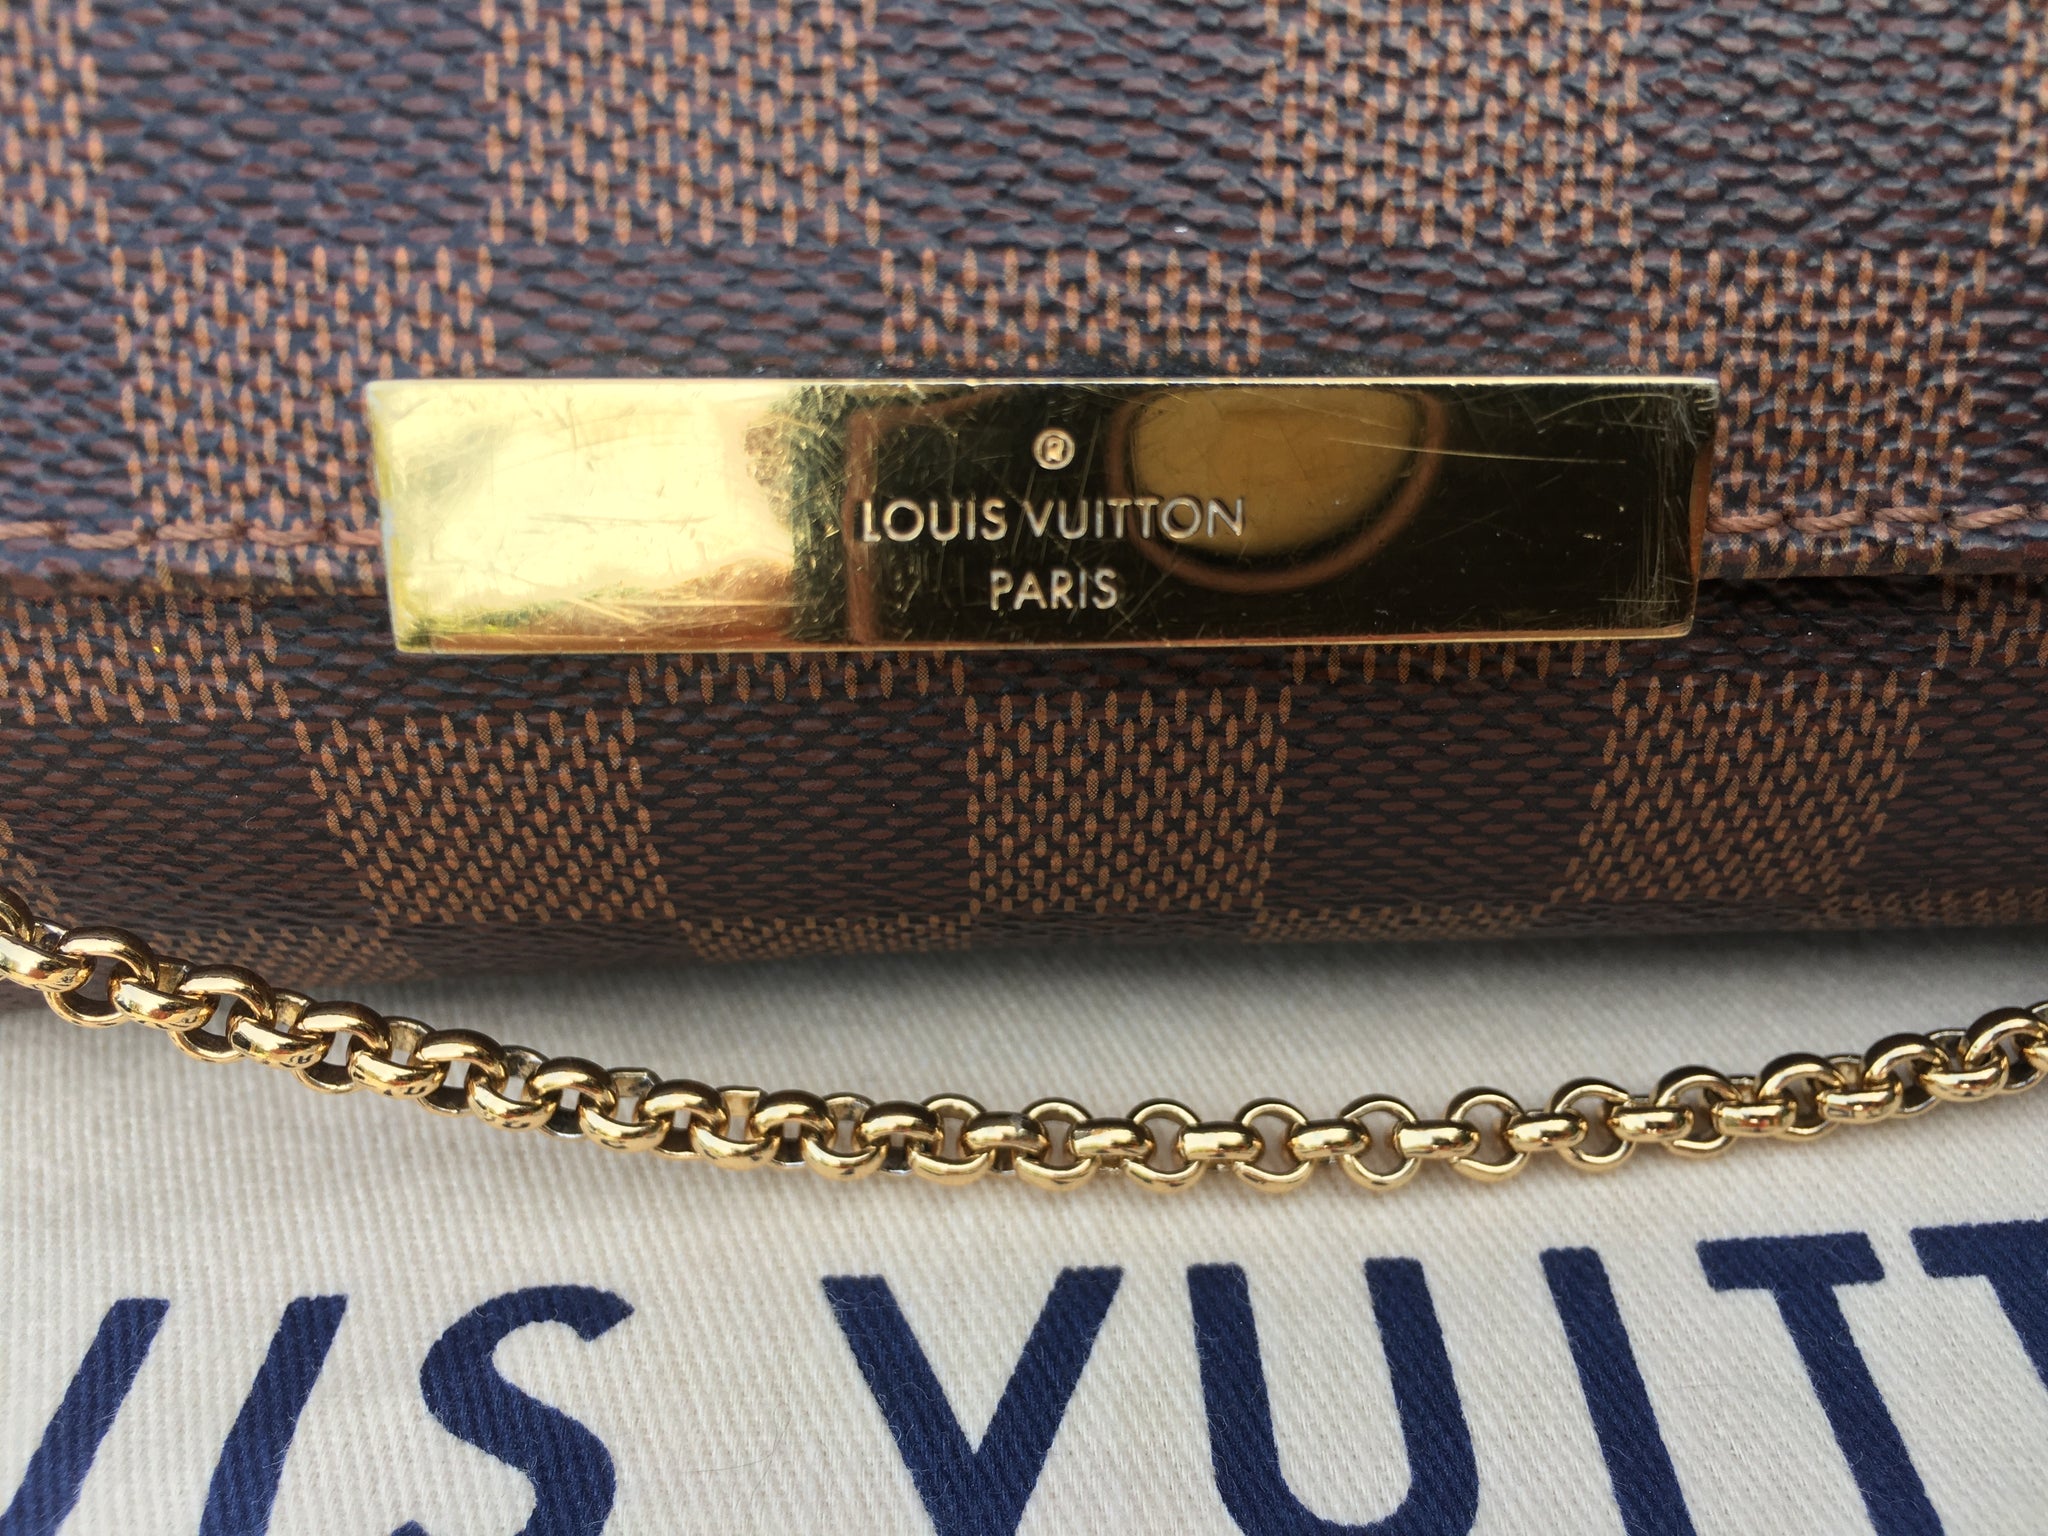 Các sao Hoa Ngữ cùng diện túi Louis Vuitton Dauphine, ai xuất sắc hơn?